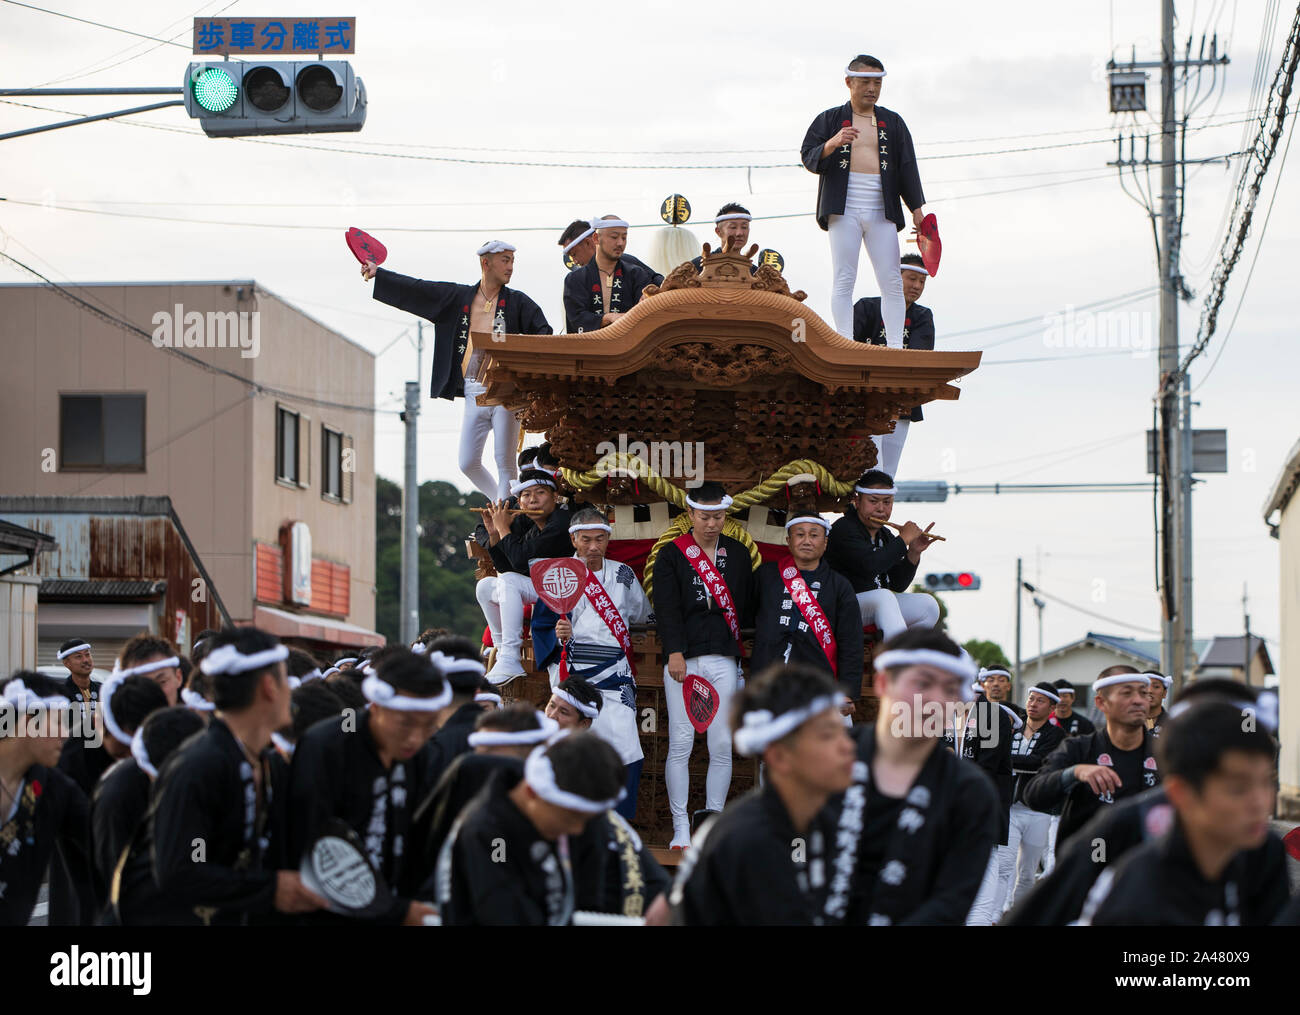 Kumatori, Japan - October 6, 2019: Local leaders atop cart amid crowd at local danjiri festival Stock Photo